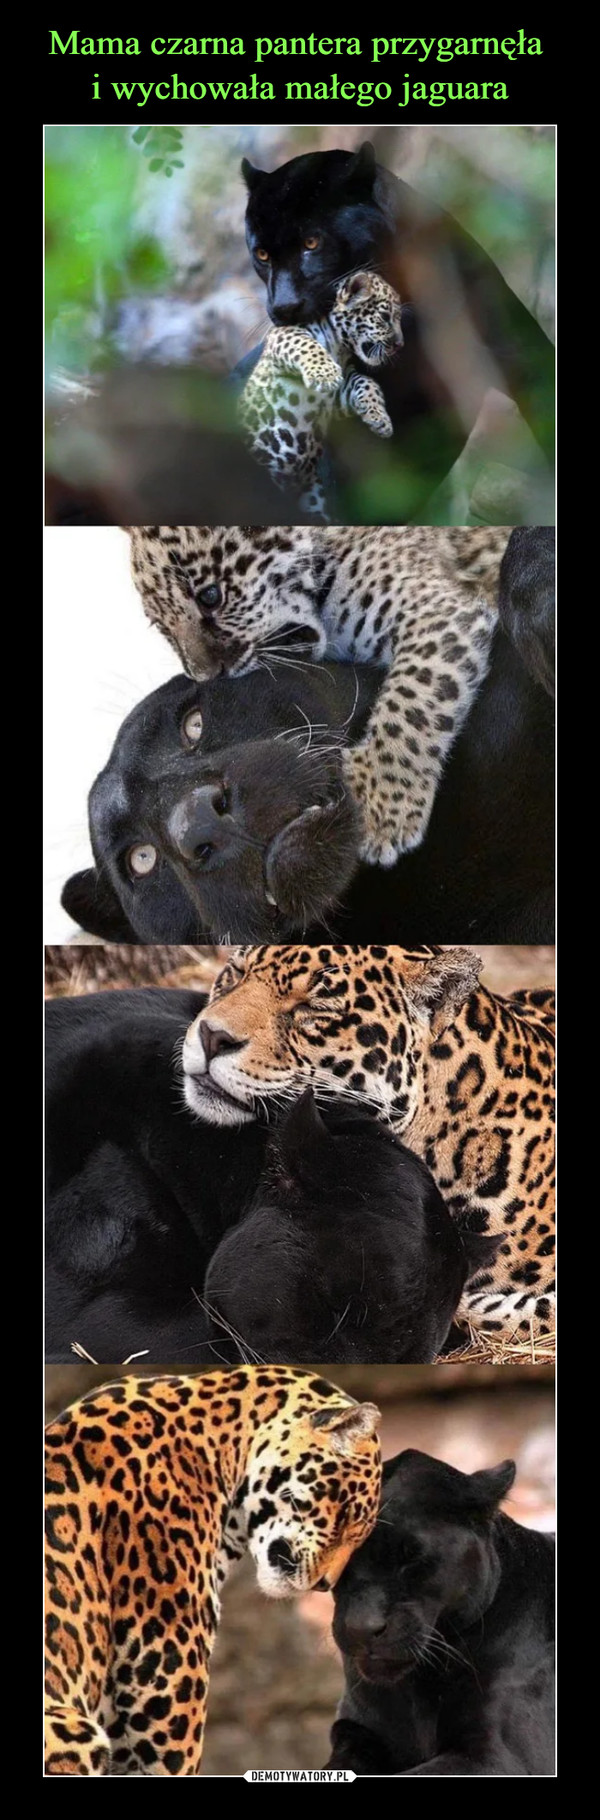 Mama czarna pantera przygarnęła 
i wychowała małego jaguara